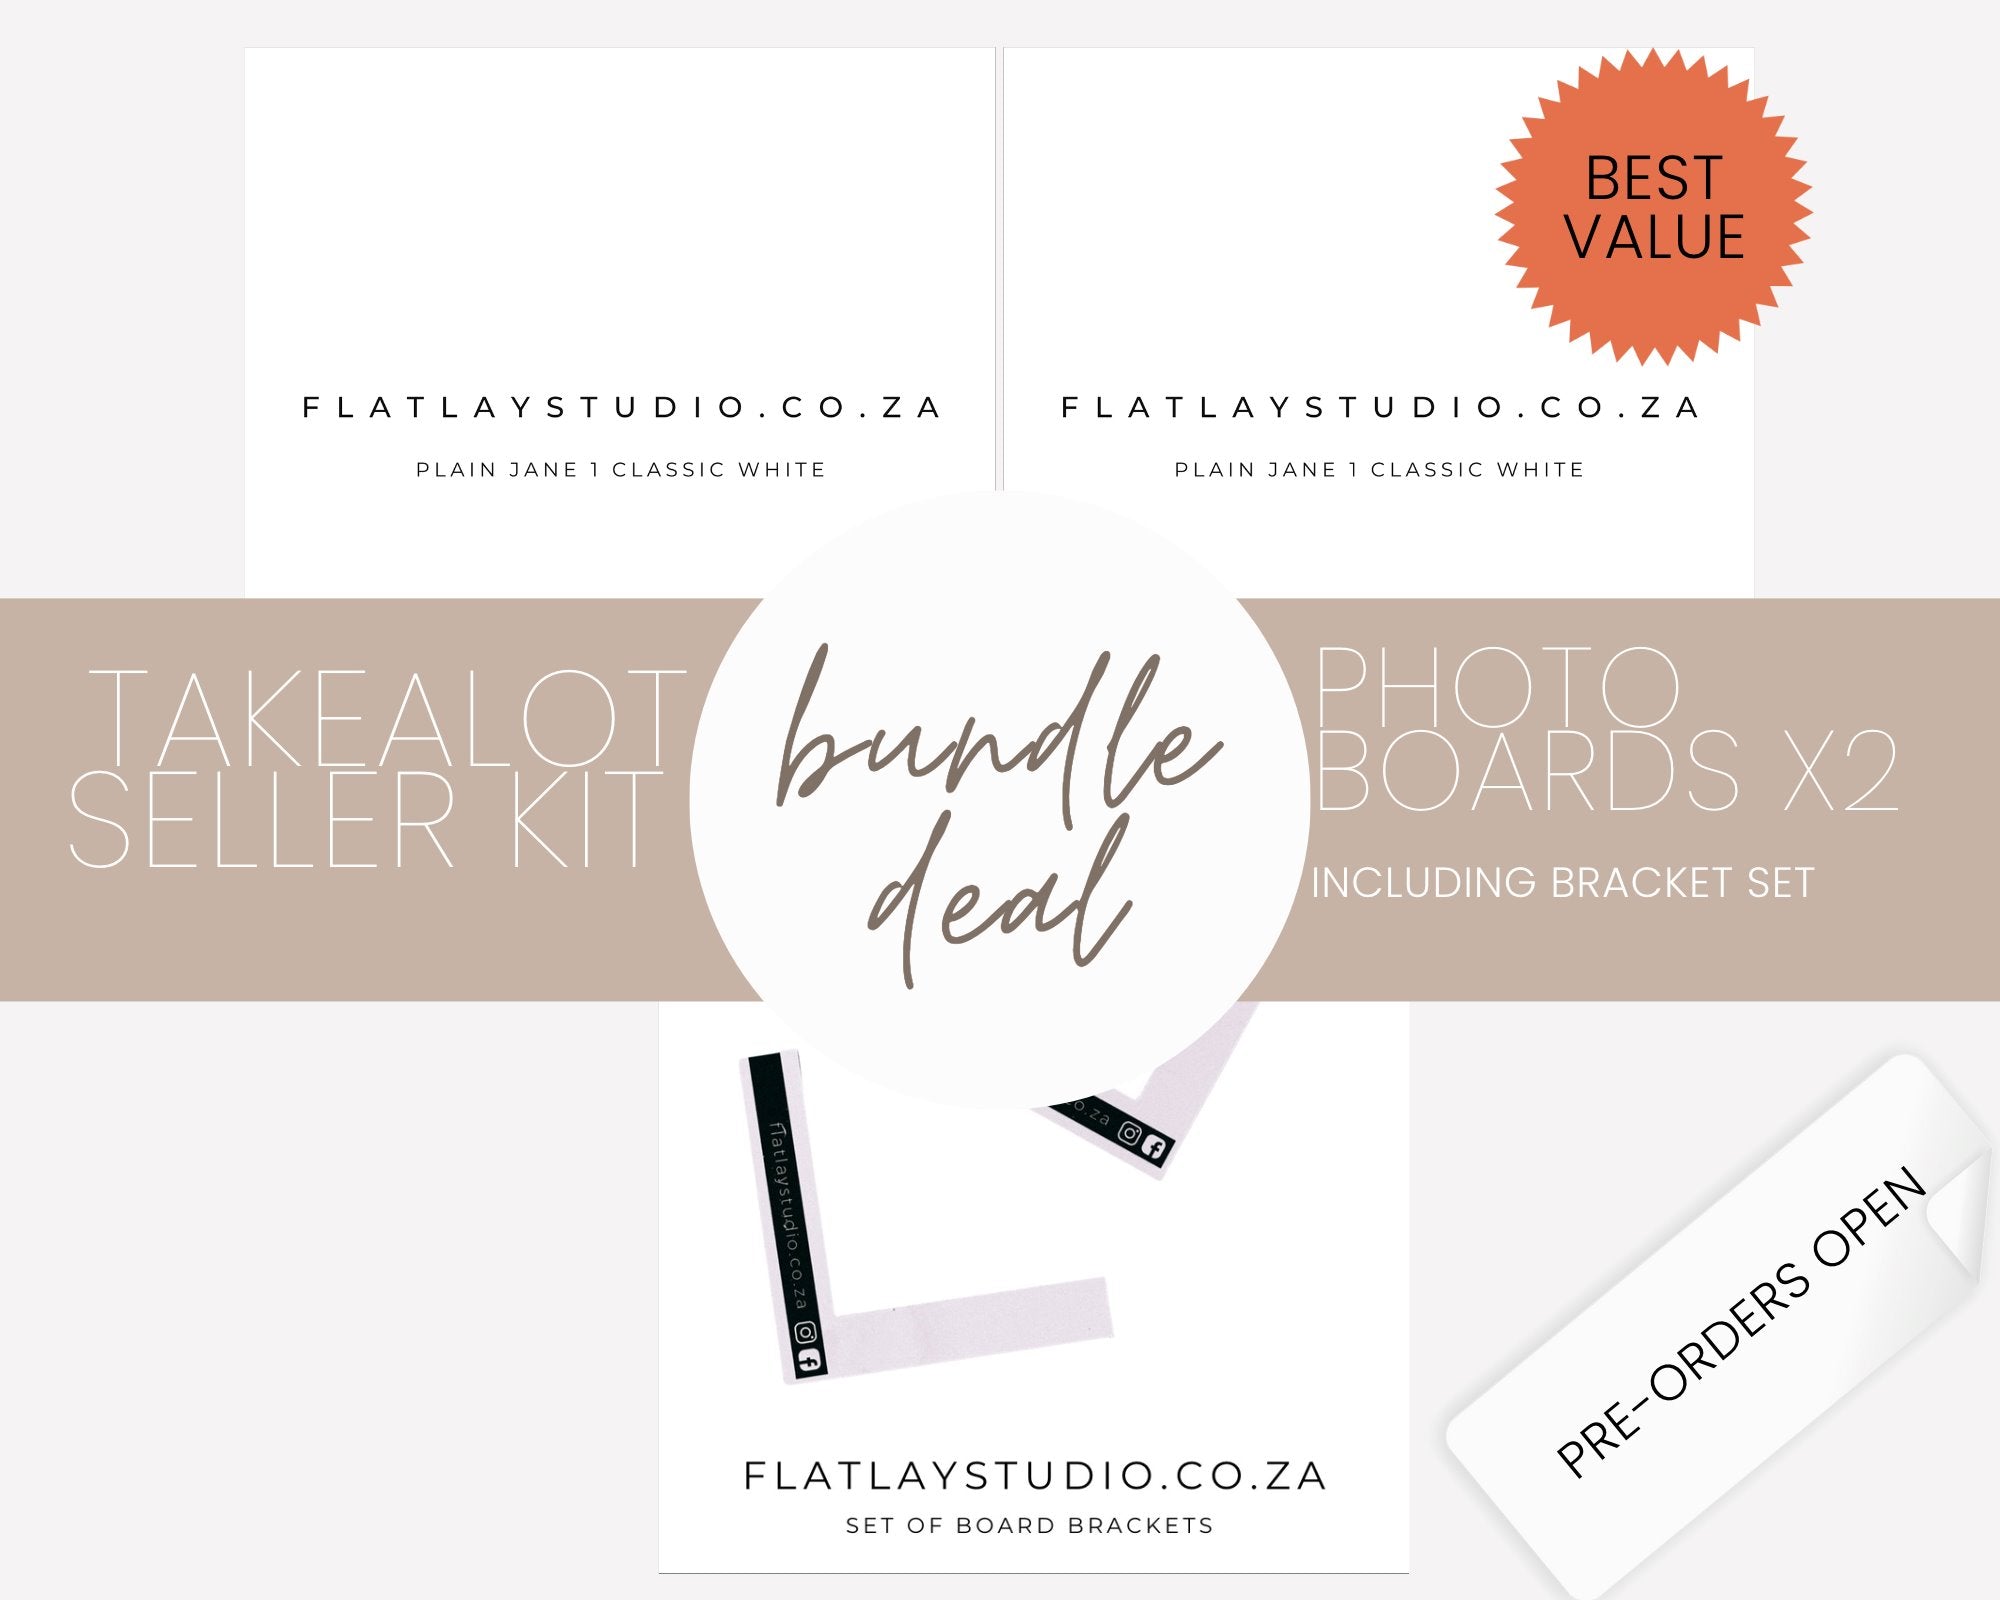 Takealot Seller Kit - Plain white boards x2 plus bracket set Flatlay Styling Board Flatlay Studio 